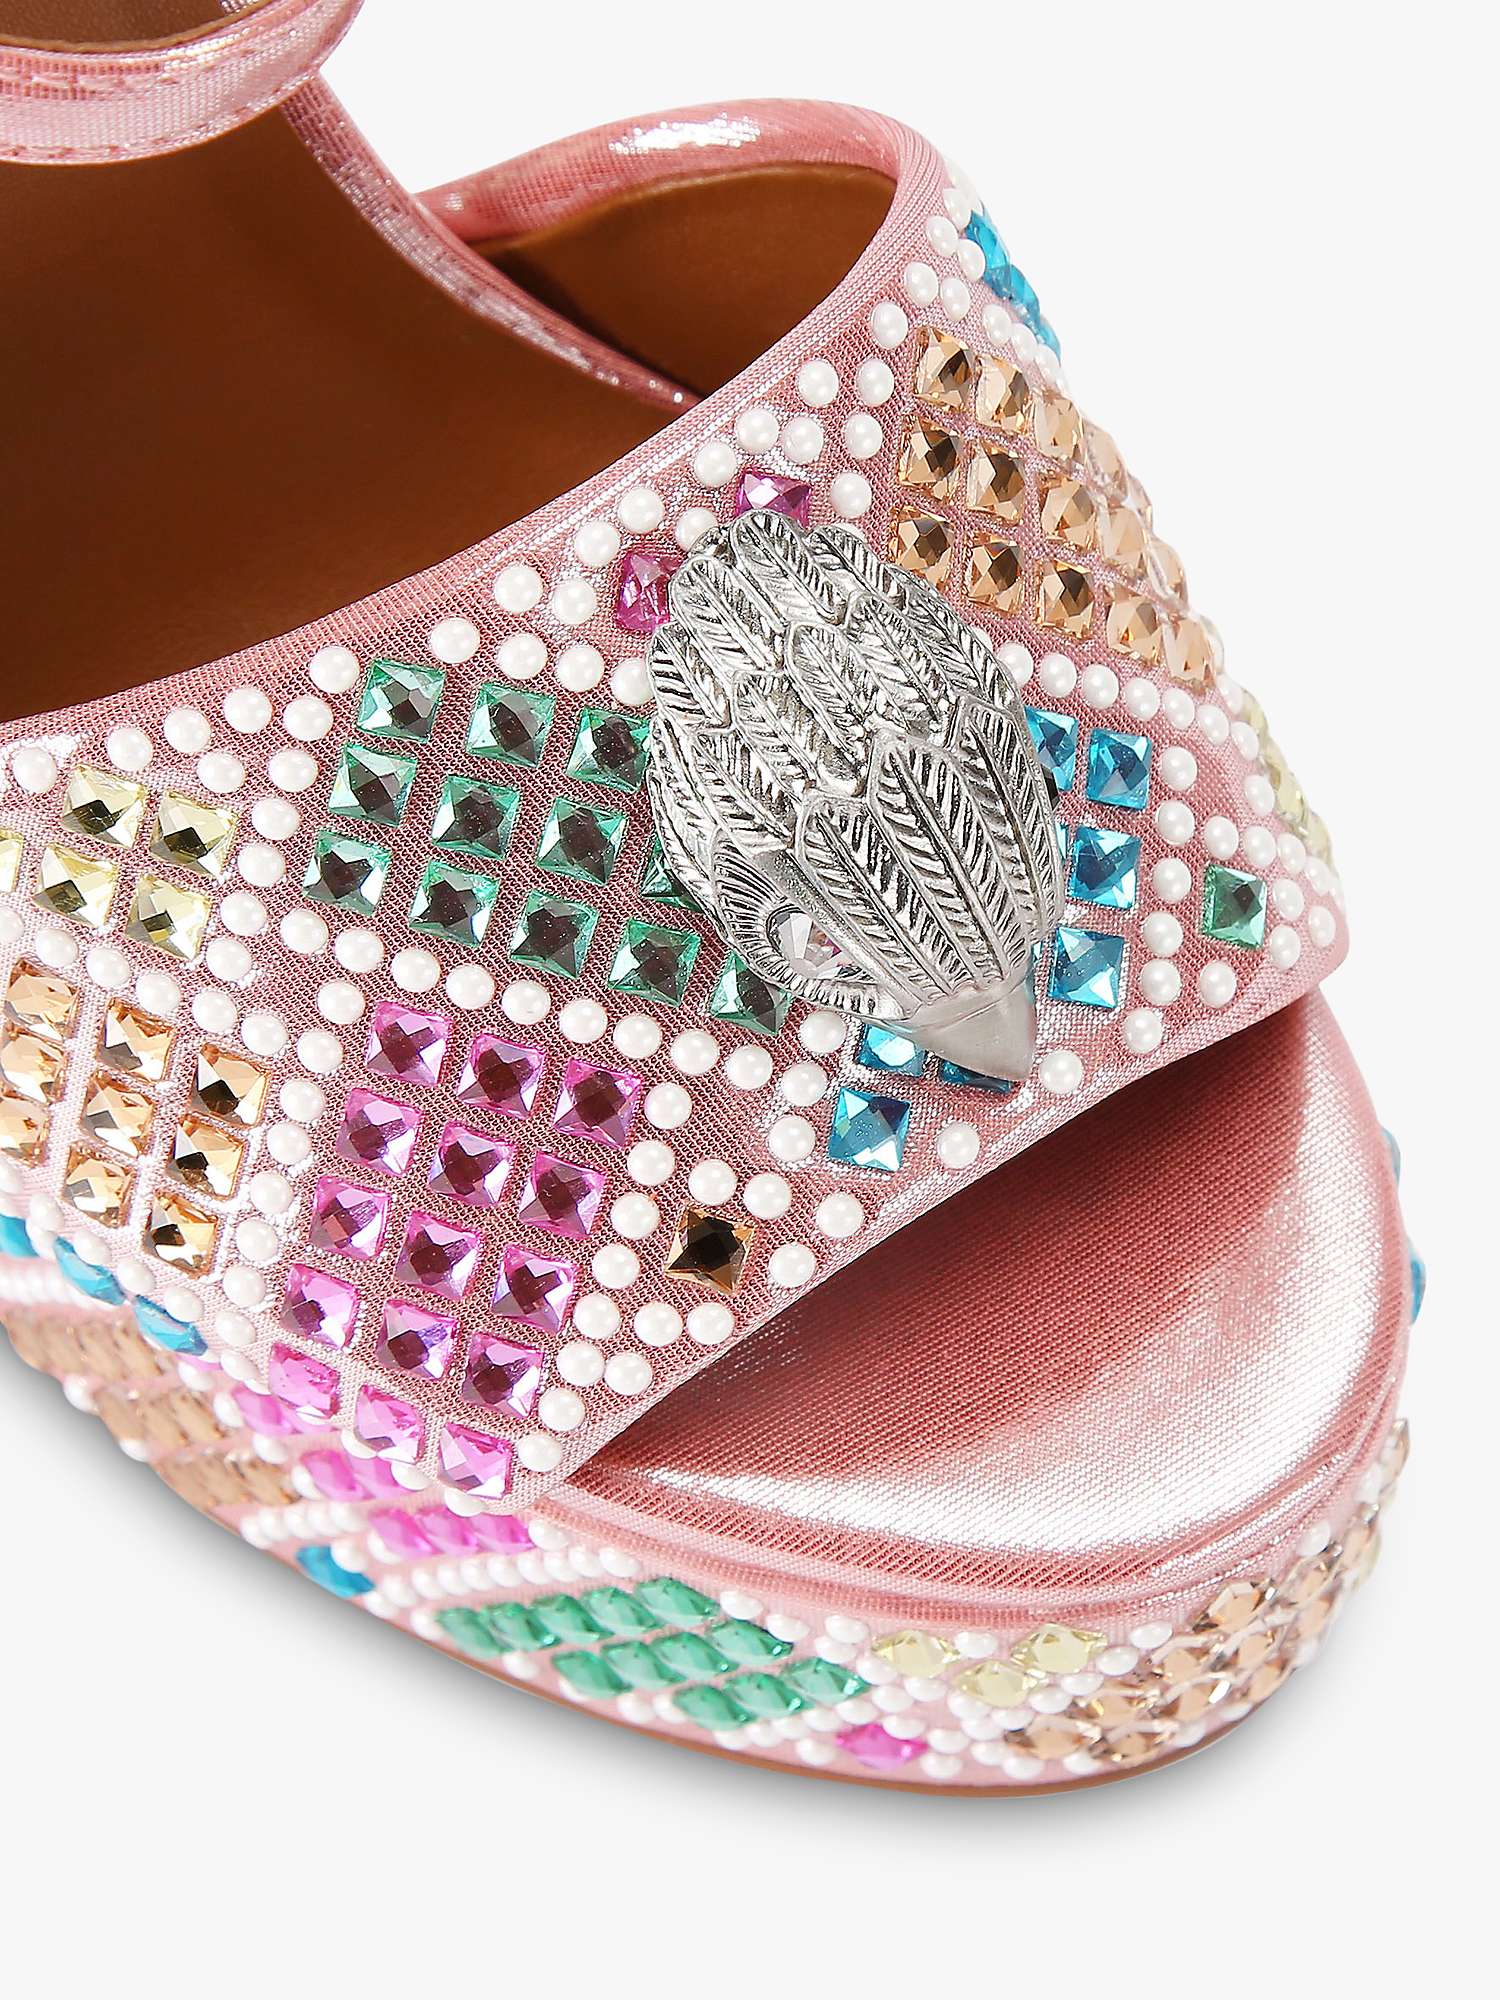 Buy Kurt Geiger London Kensington Embellished Platform Heel Sandals, Pink/Multi Online at johnlewis.com